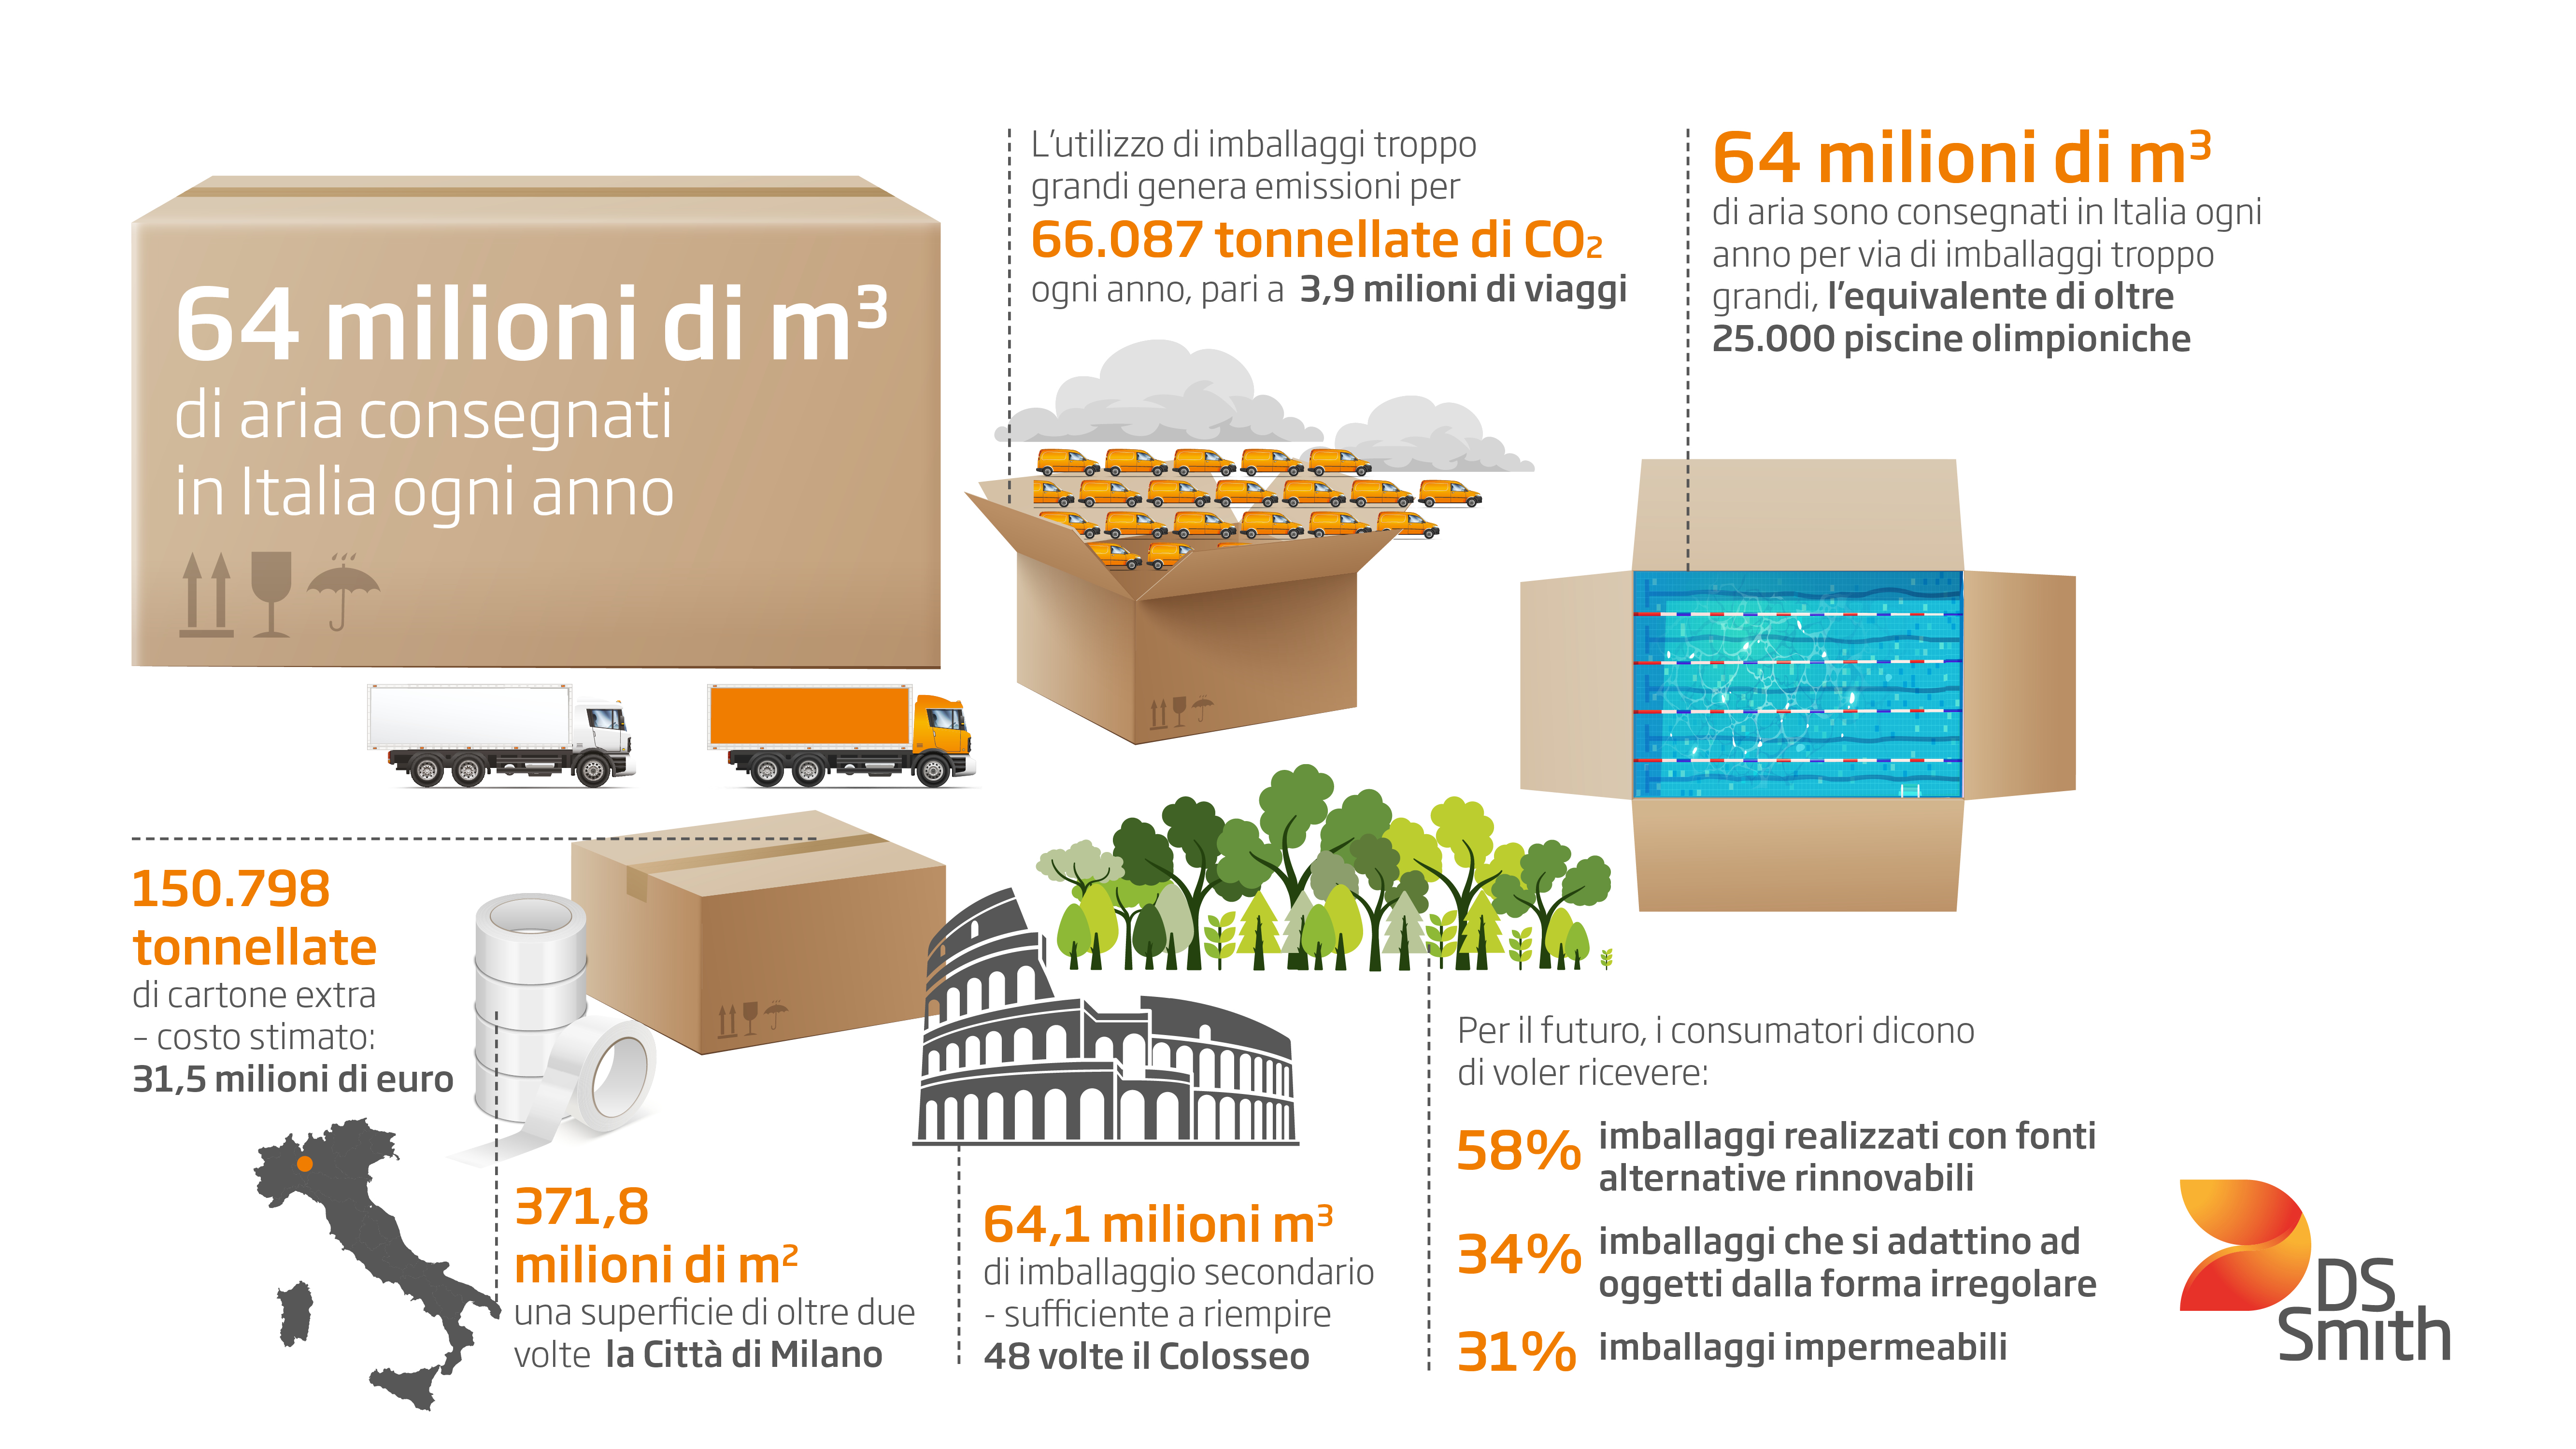 Technoretail - E-commerce: ogni anno consegnati nelle case degli italiani oltre 64 milioni di mc di aria 